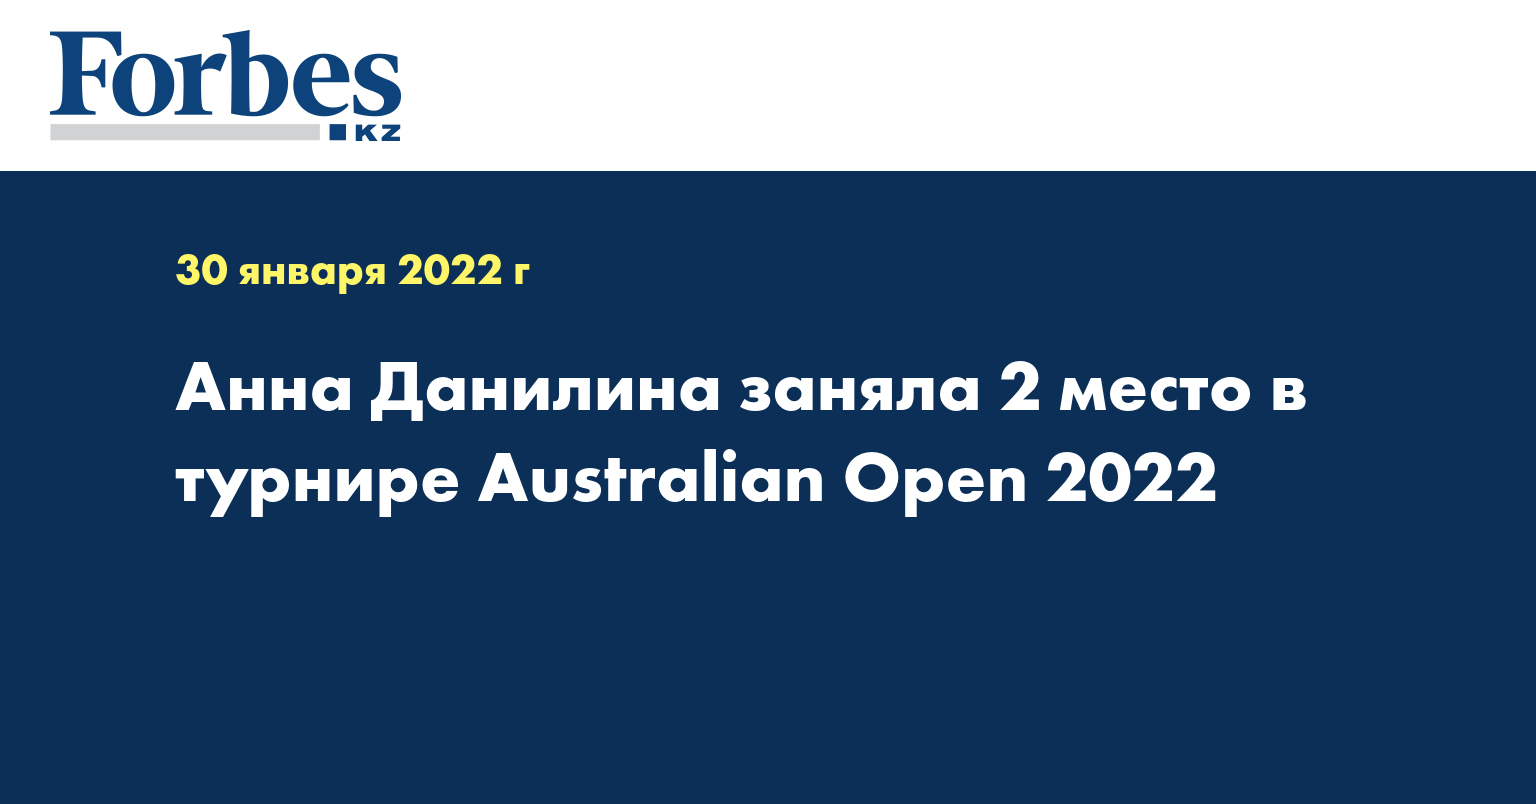 Анна Данилина заняла 2 место в турнире Australian Open 2022